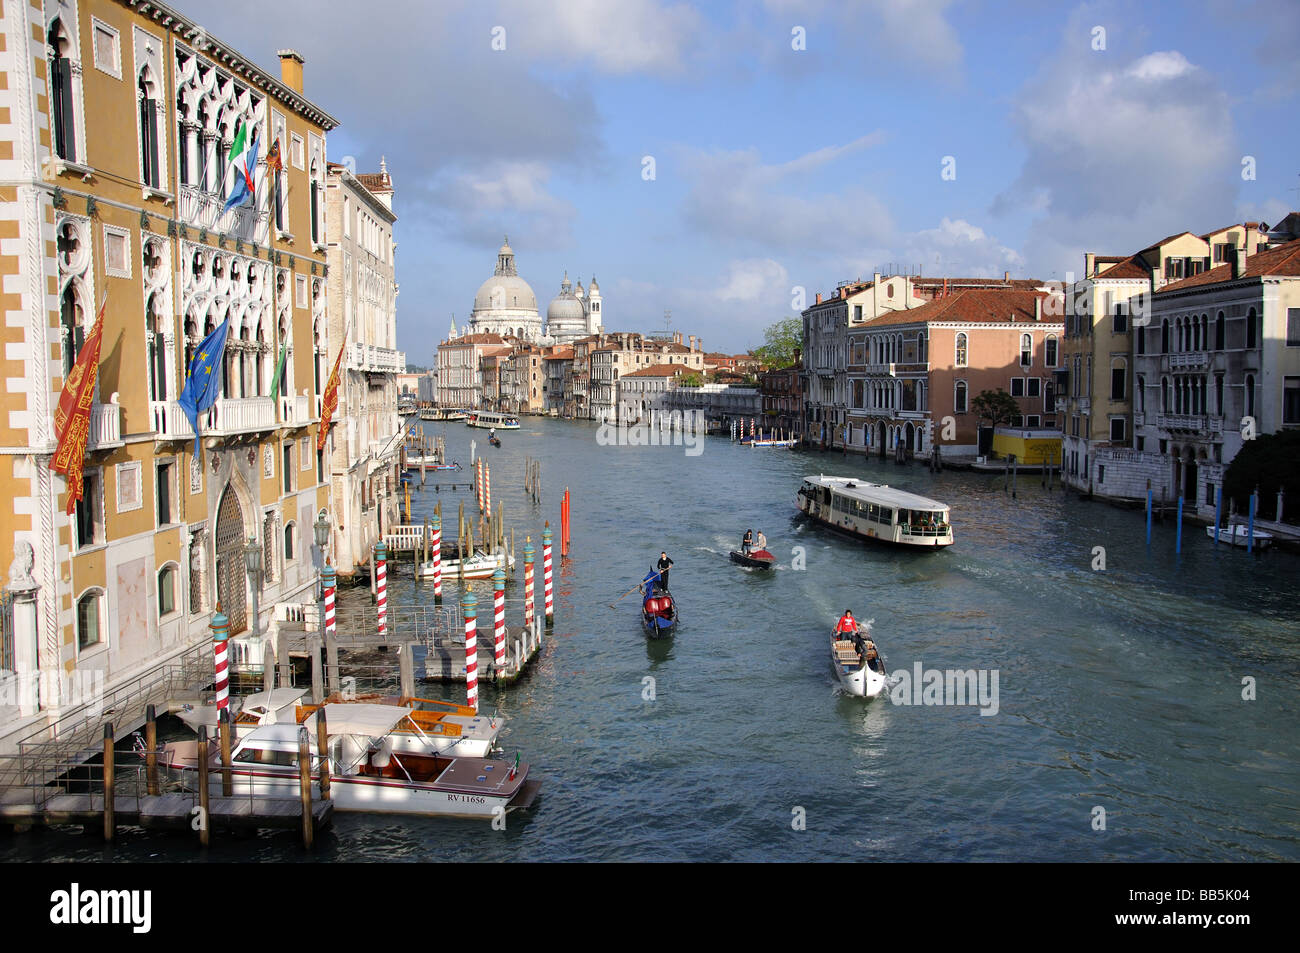 Grand Canal, Venice, Venice Province, Veneto Region, Italy Stock Photo